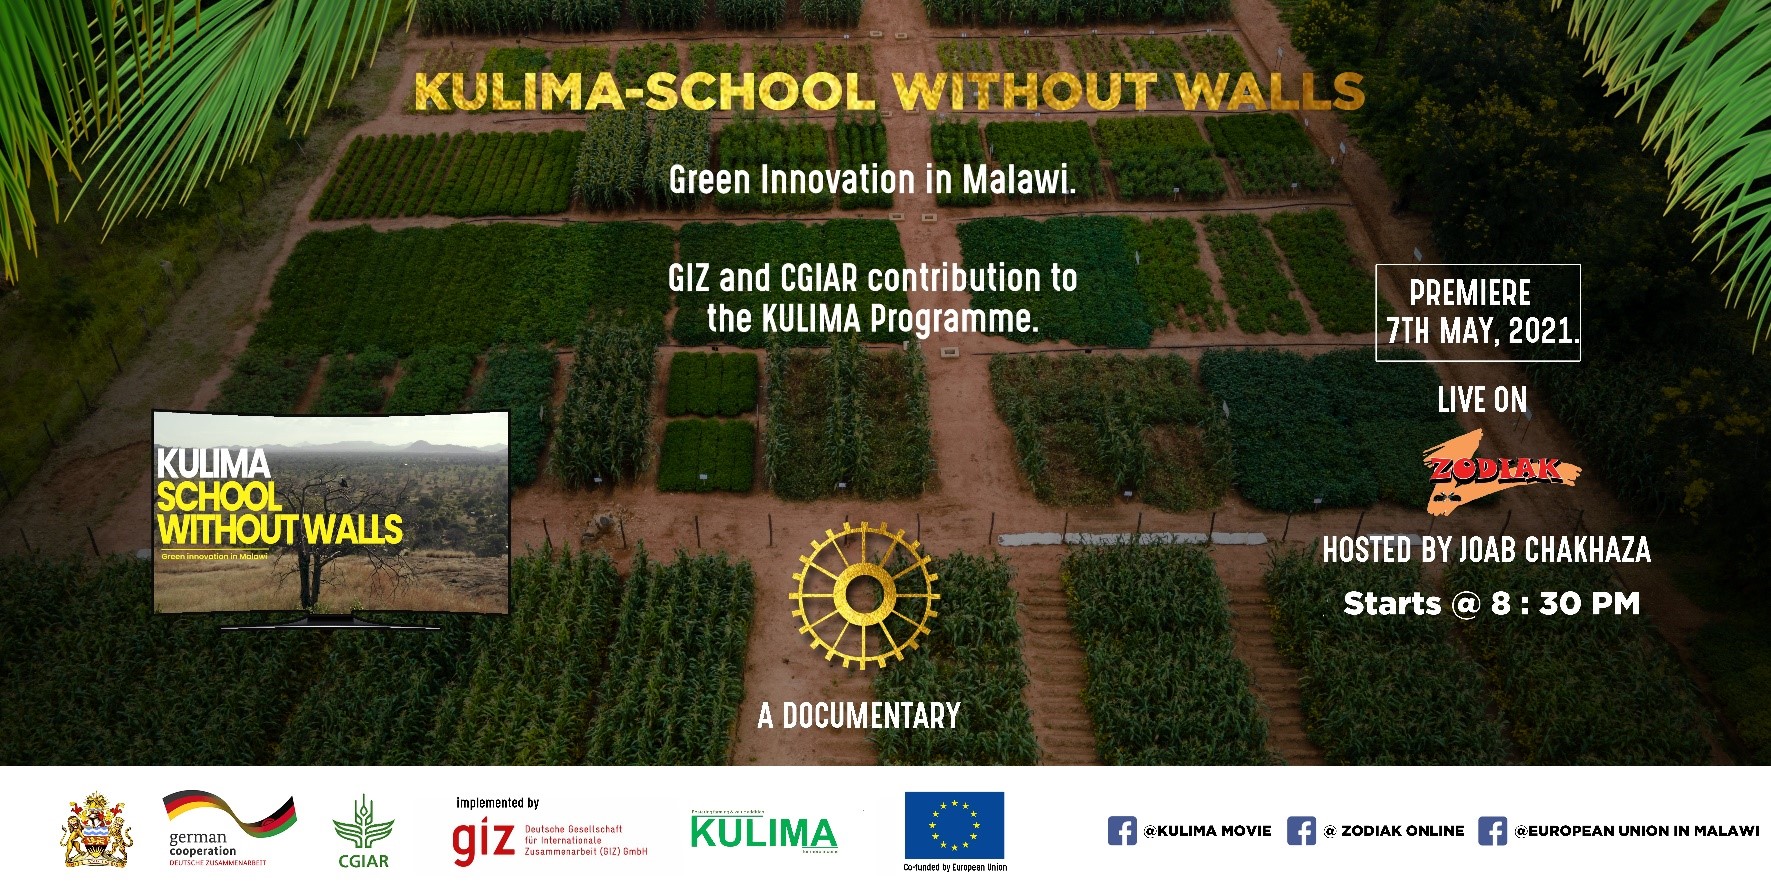 KULIMA-School Without Walls